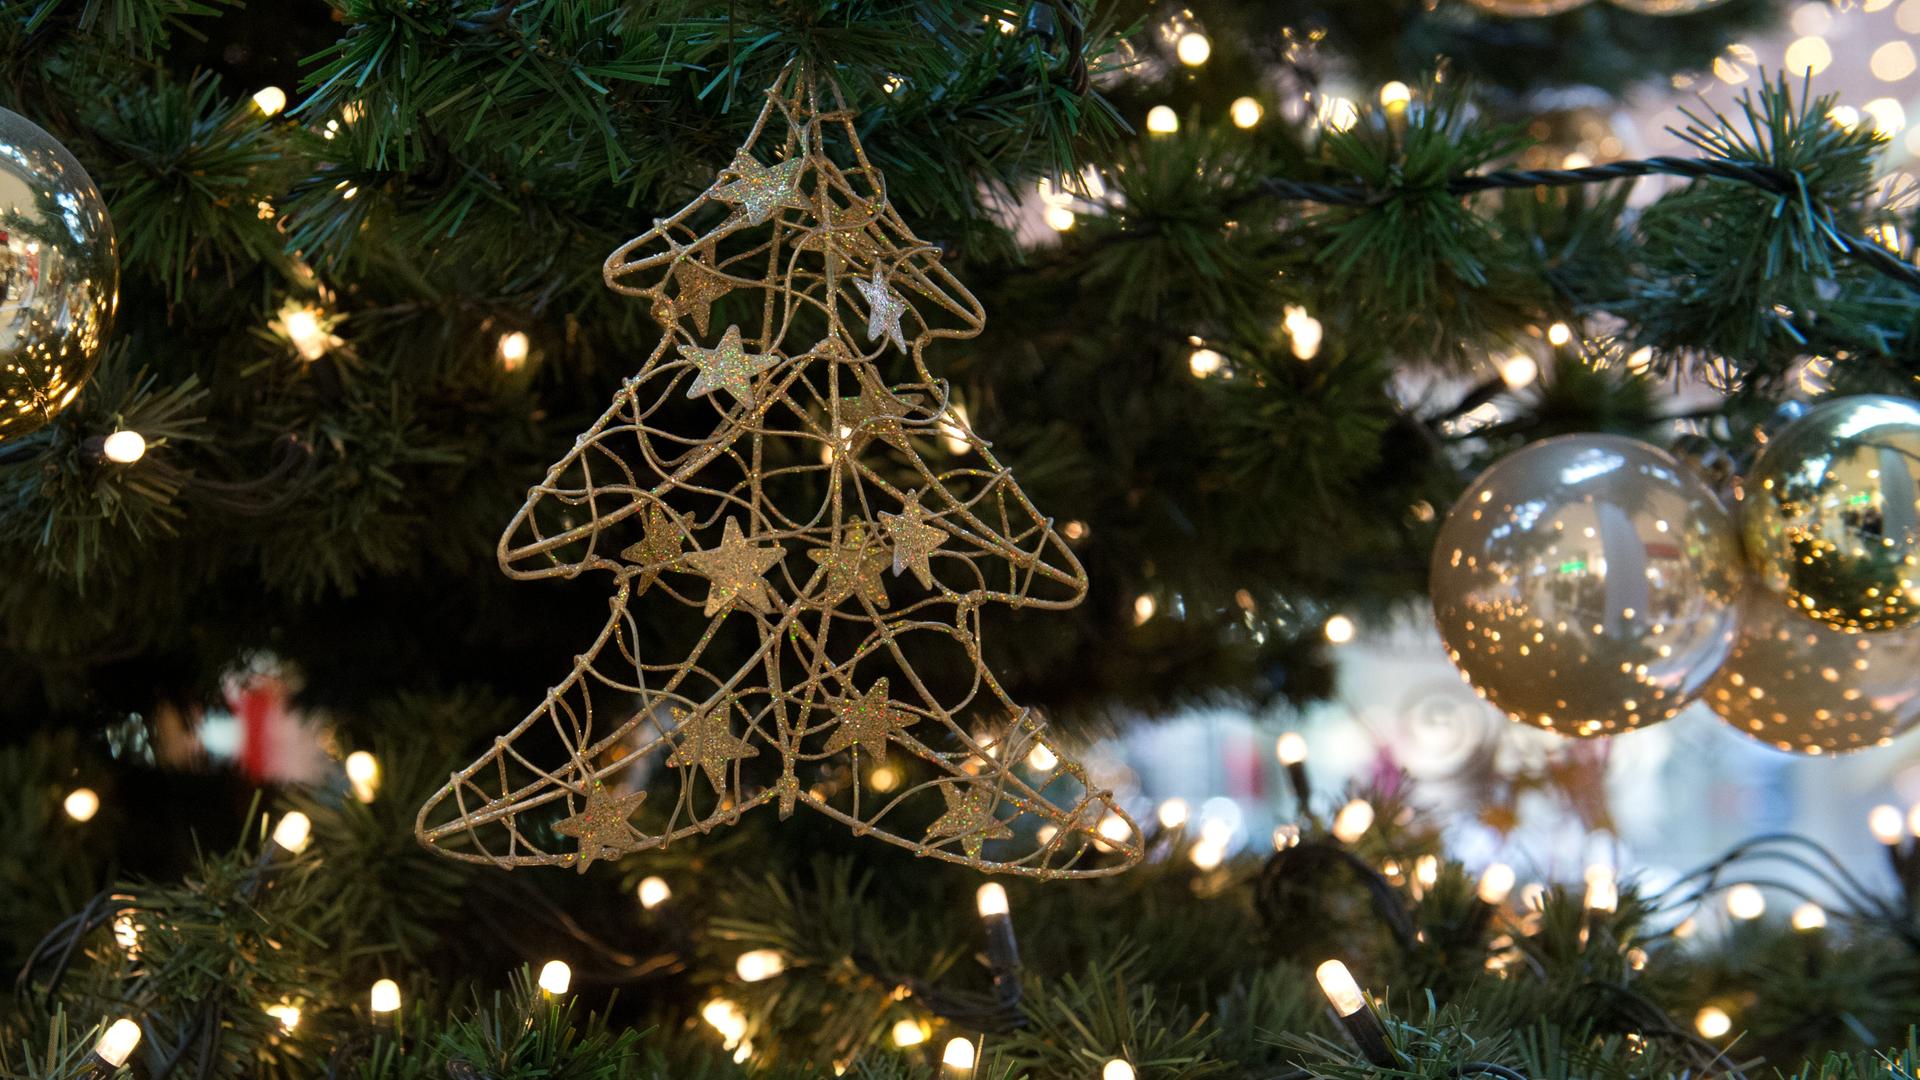 Wir sehen die Beleuchtung eines Weihnachtsbaums in Nahaufnahme.